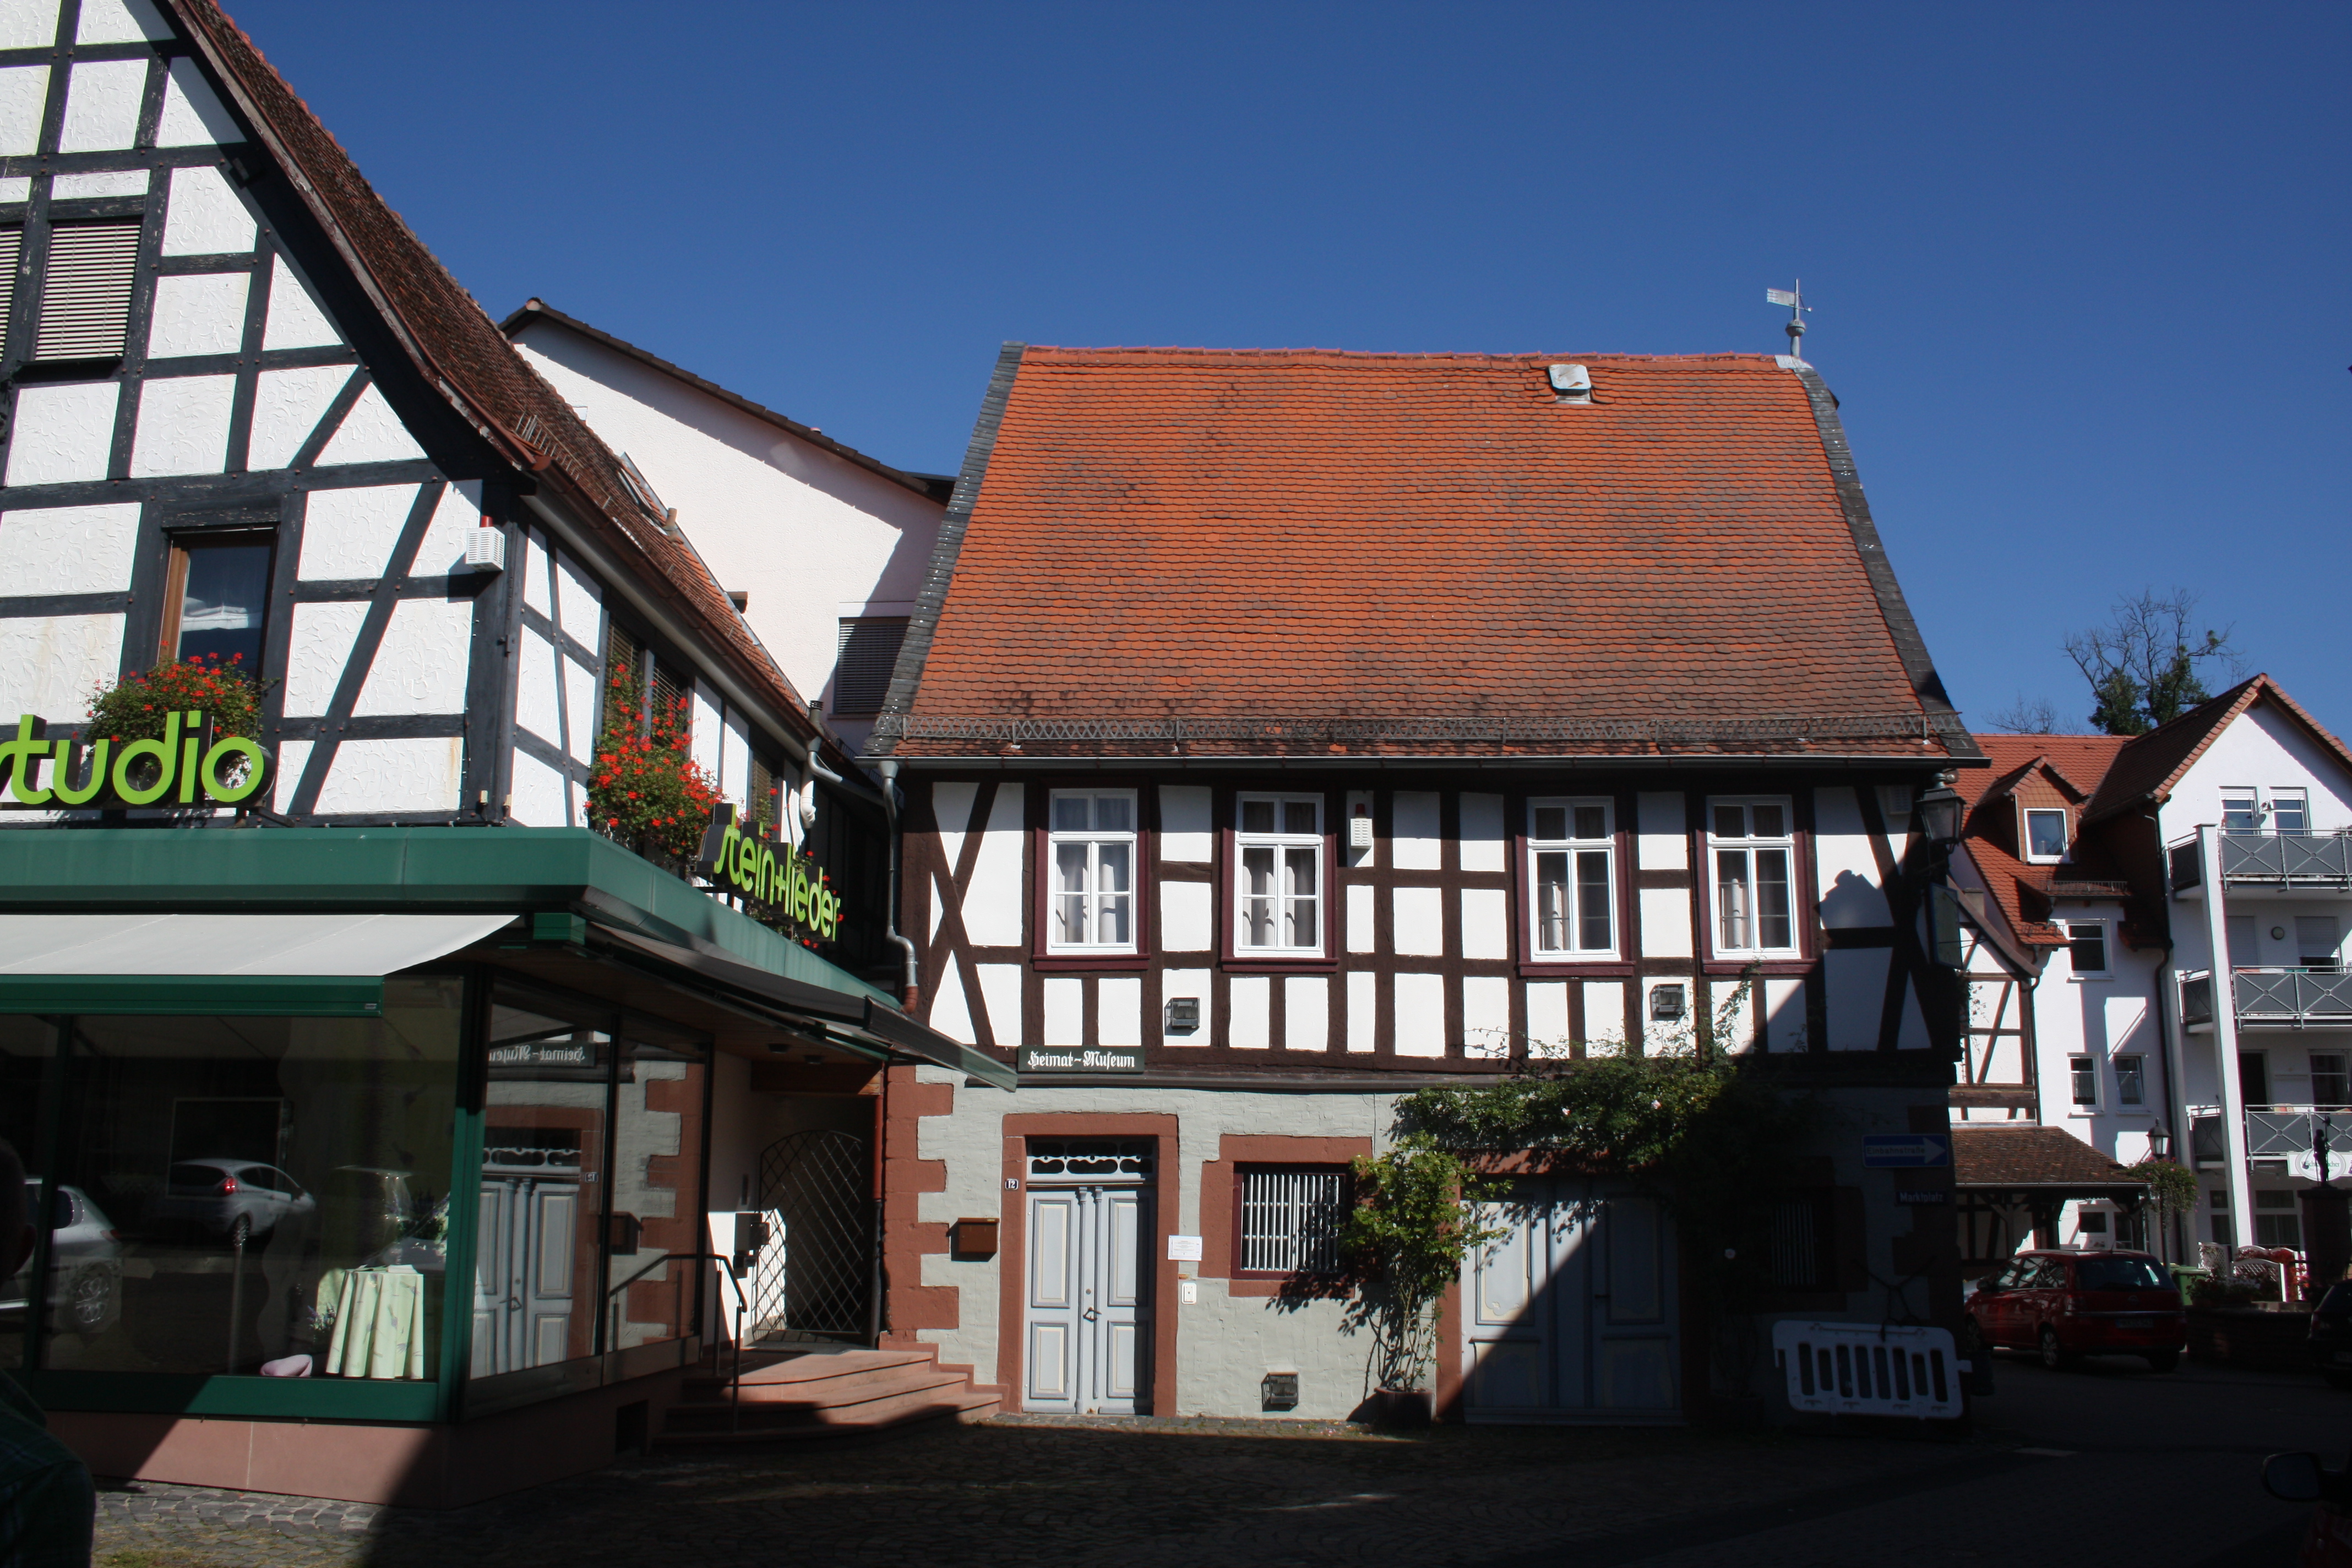 Das Heimatmuseum von Wächtersbach u.a. mit der Wächtersbacher Keramik.